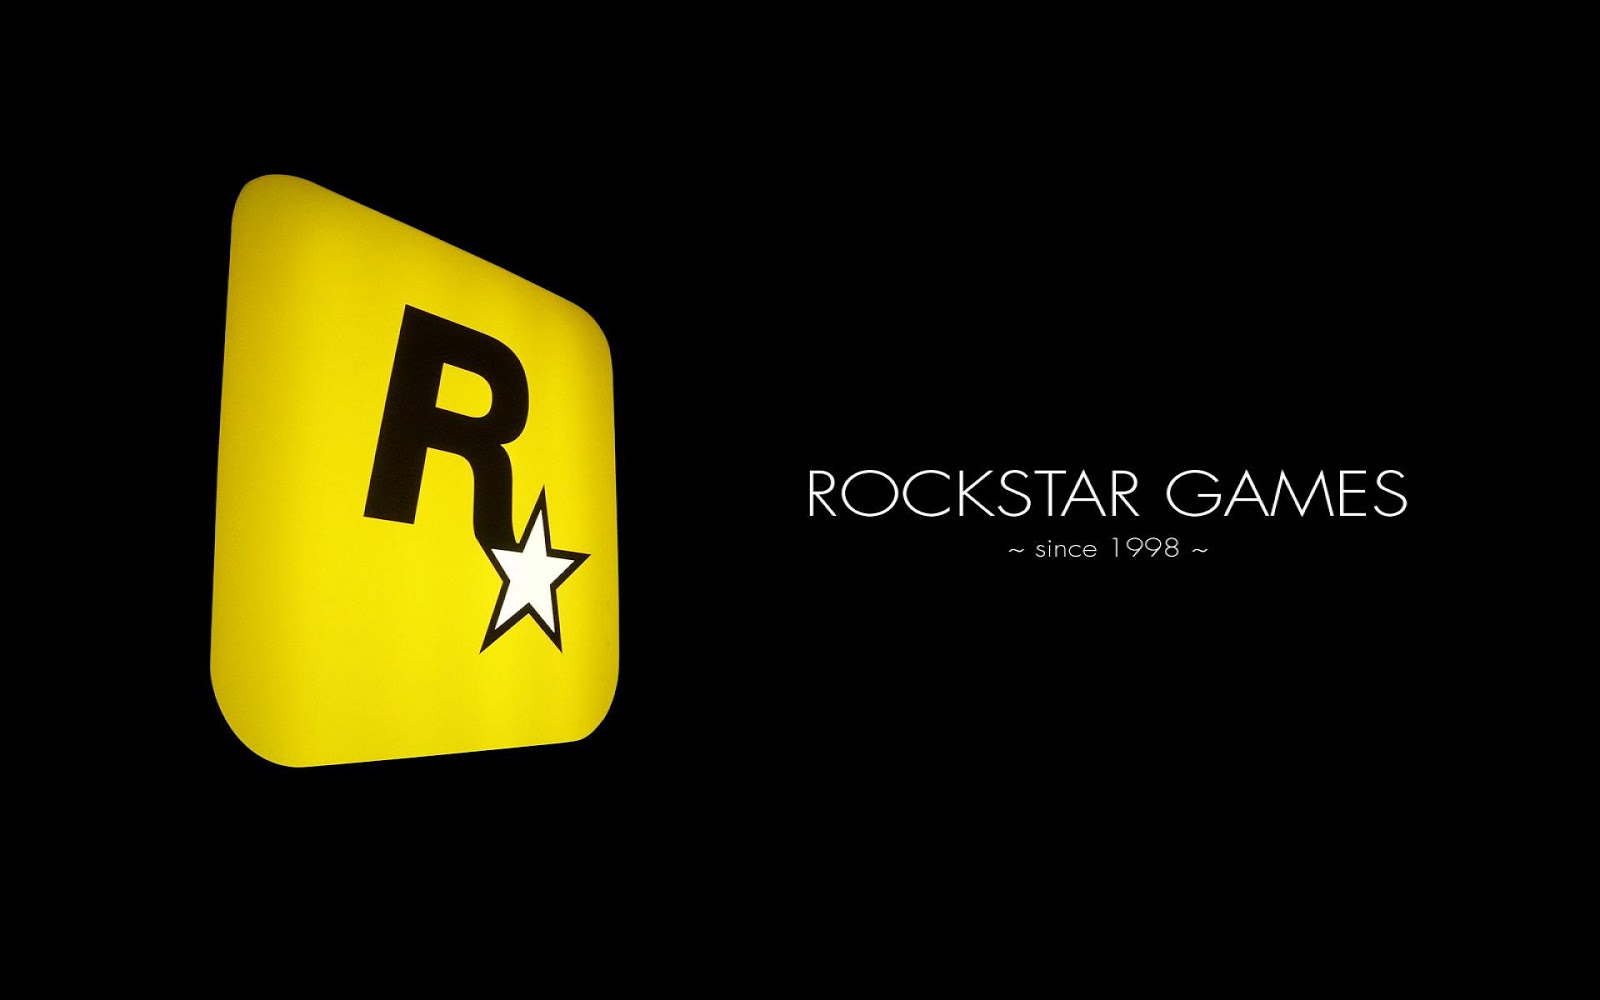 INFO VIDEOJUEGOS Historia y Evolución de Rockstar Games.